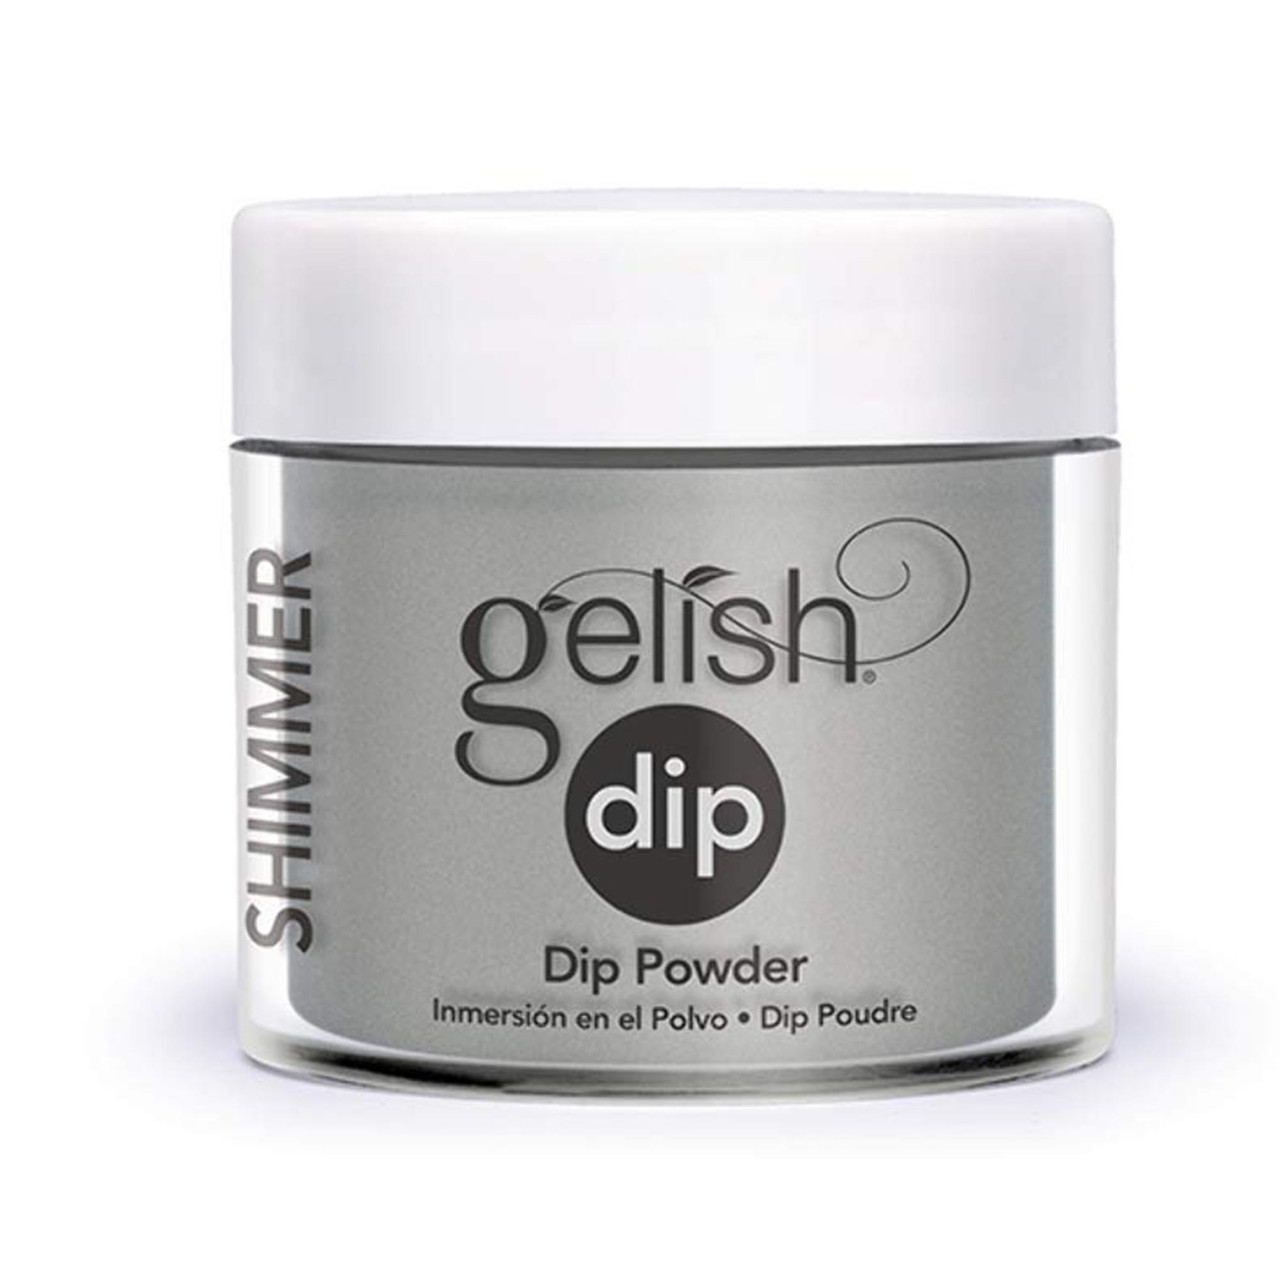 Gelish Dip Powder - 1610800 - Holy Cow-girl!